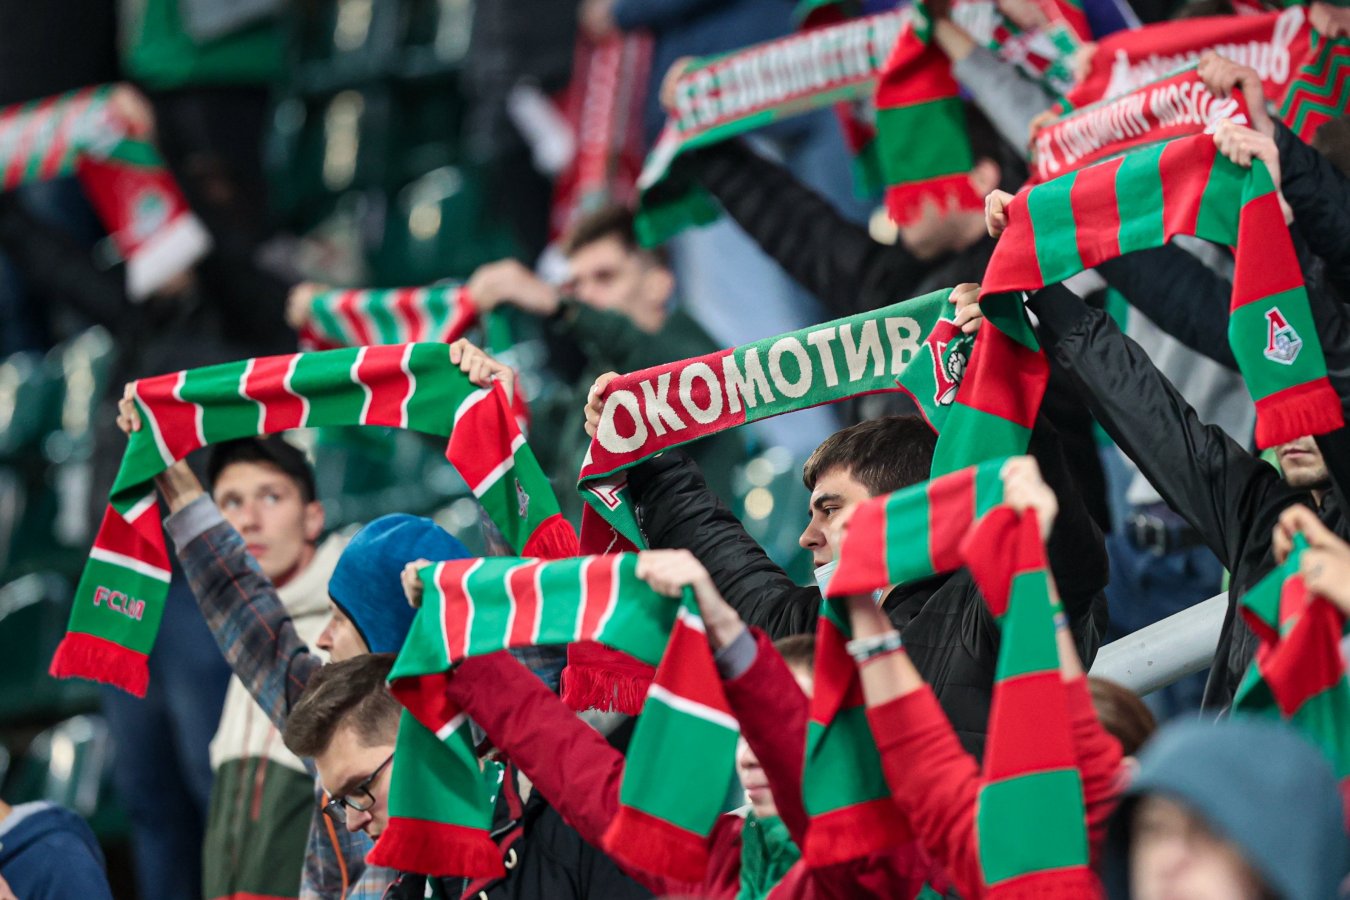 Фанаты «Локомотива» выступили с заявлением по поводу вручения серебряной медали Сёмину